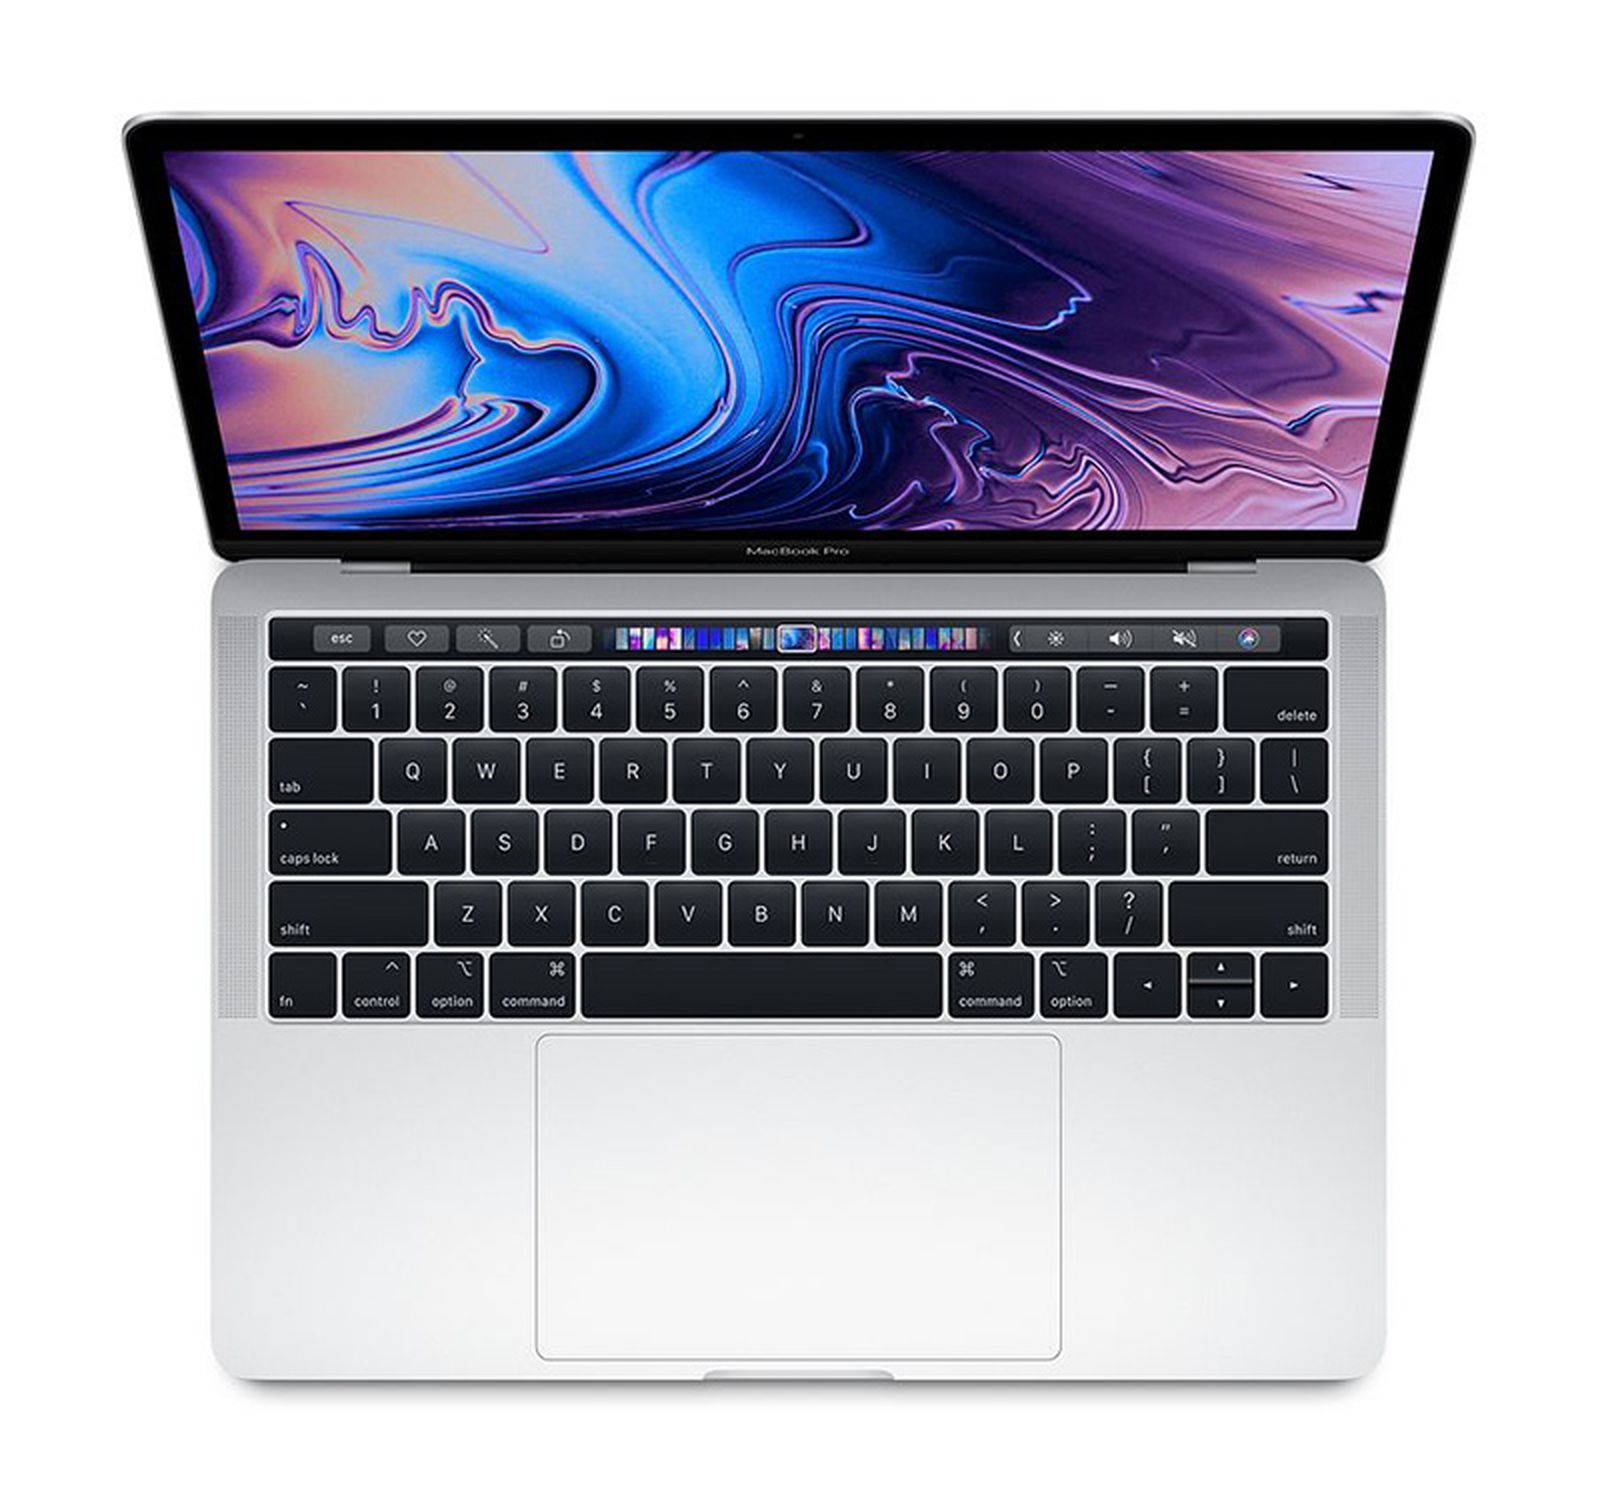 Documento interno de Apple dice que las nuevas membranas de teclado de MacBook son sobre escombros